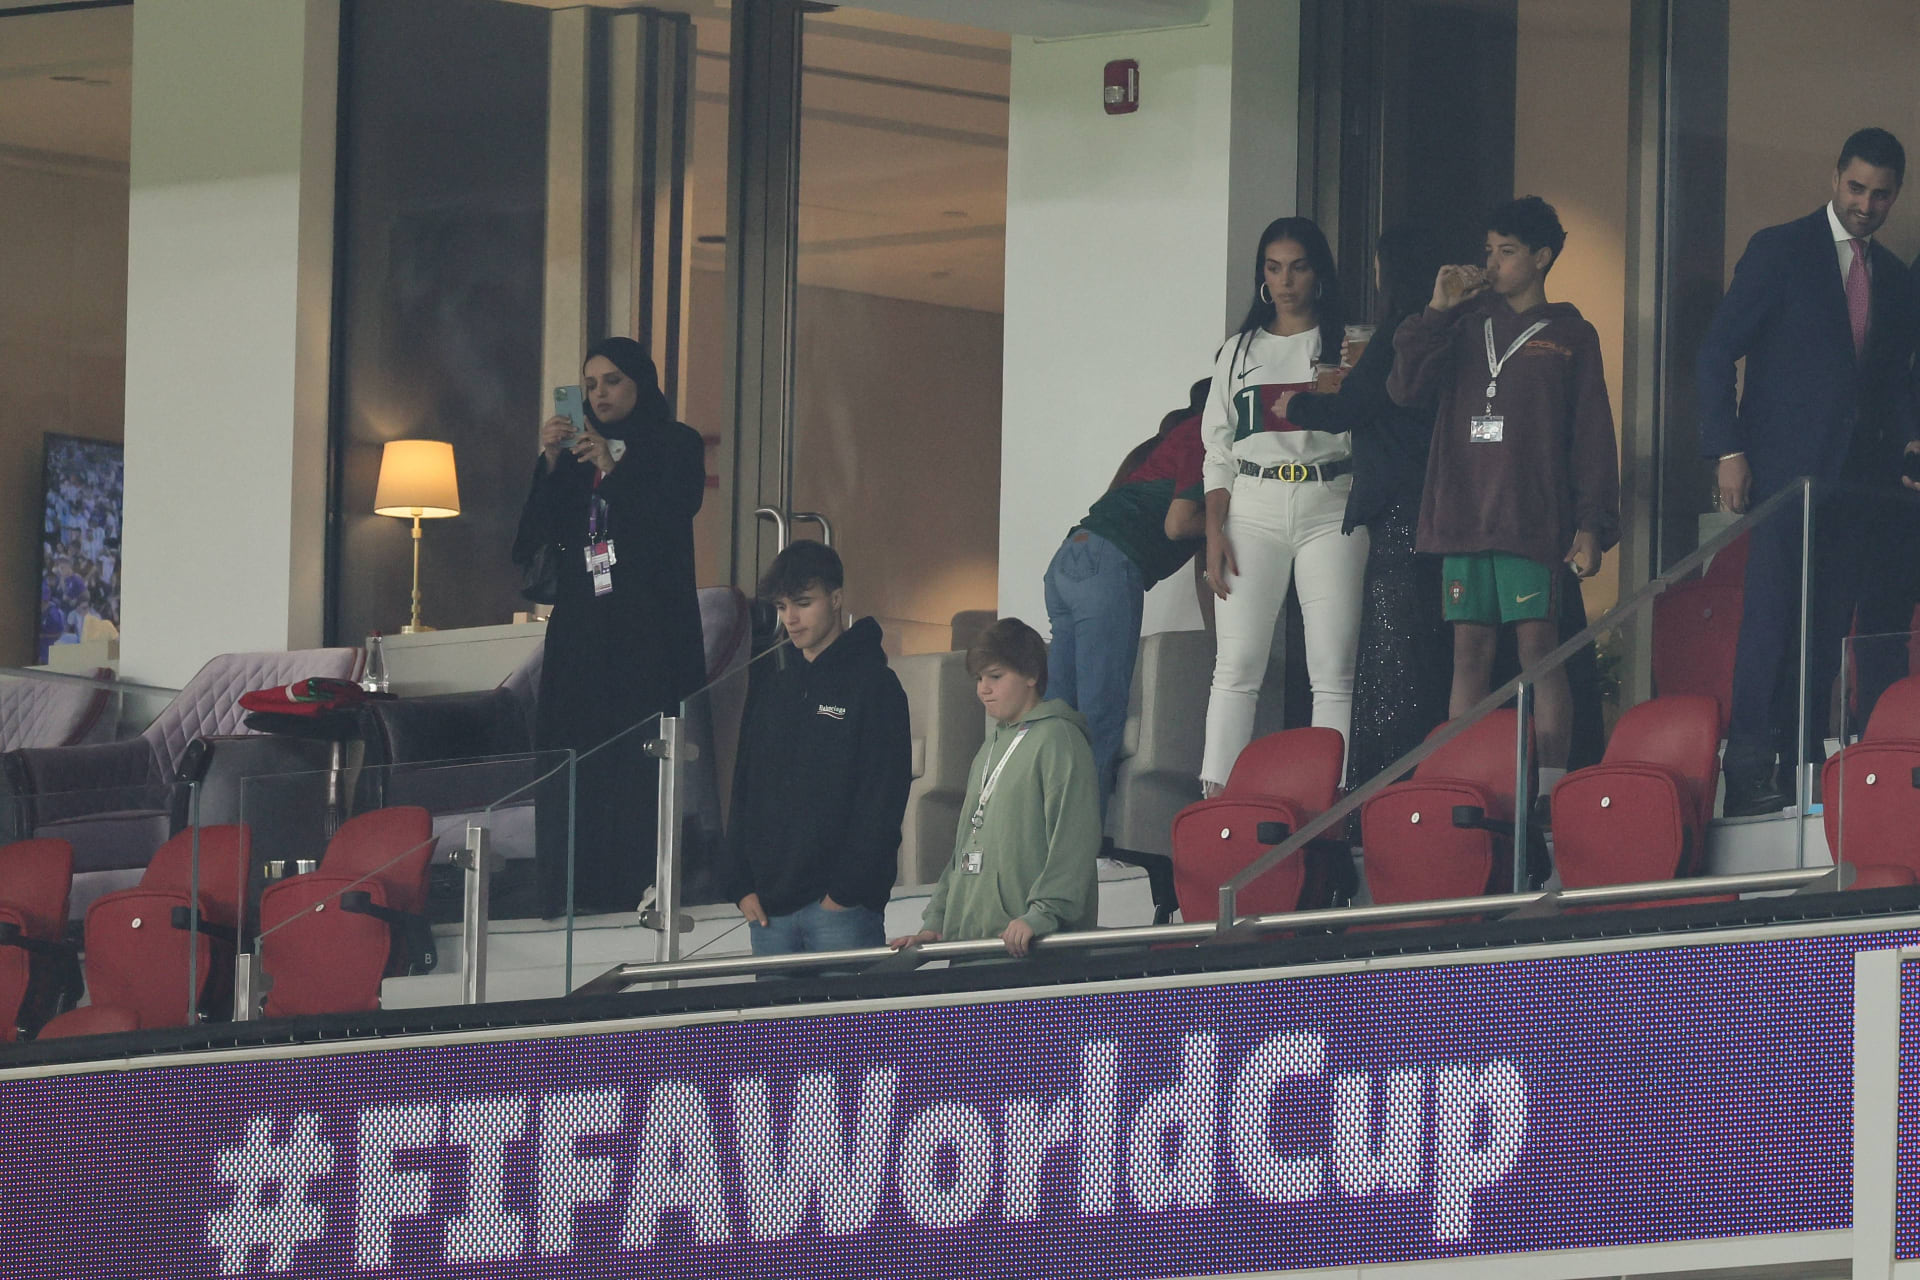 La cámara revela las reacciones de Georgina, la amiga de Ronaldo, al partido Marruecos-Portugal